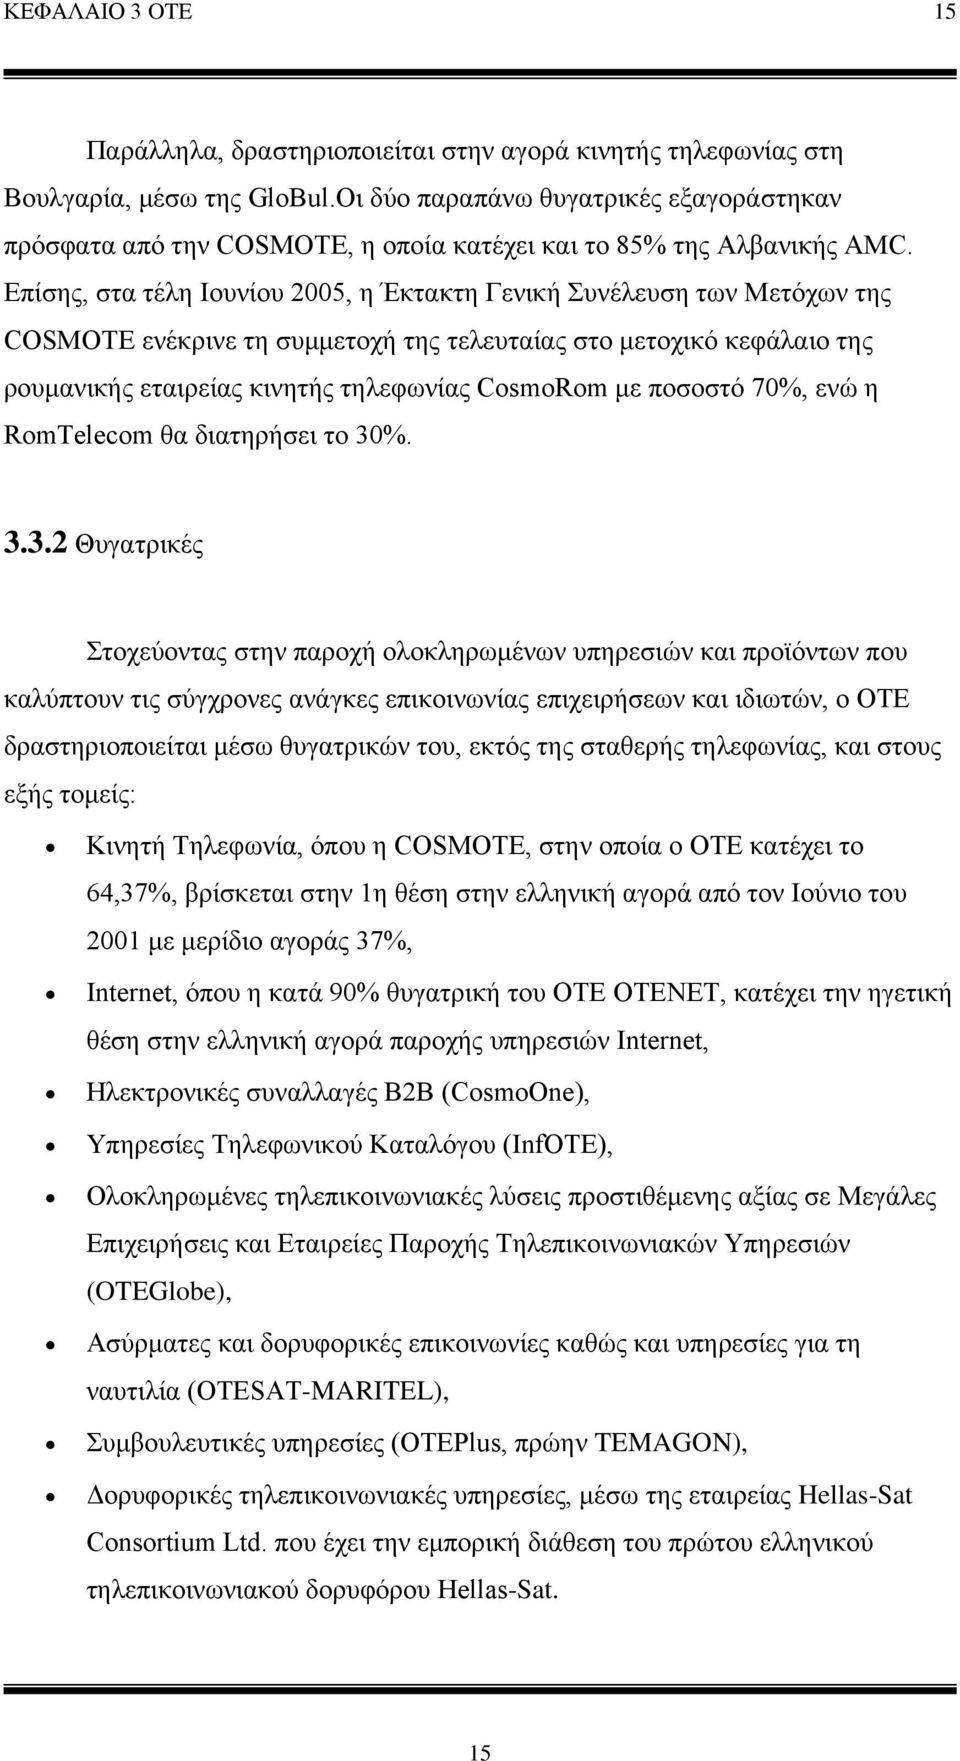 Επίσης, στα τέλη Ιουνίου 2005, η Έκτακτη Γενική Συνέλευση των Μετόχων της COSMOTE ενέκρινε τη συμμετοχή της τελευταίας στο μετοχικό κεφάλαιο της ρουμανικής εταιρείας κινητής τηλεφωνίας CosmoRom με